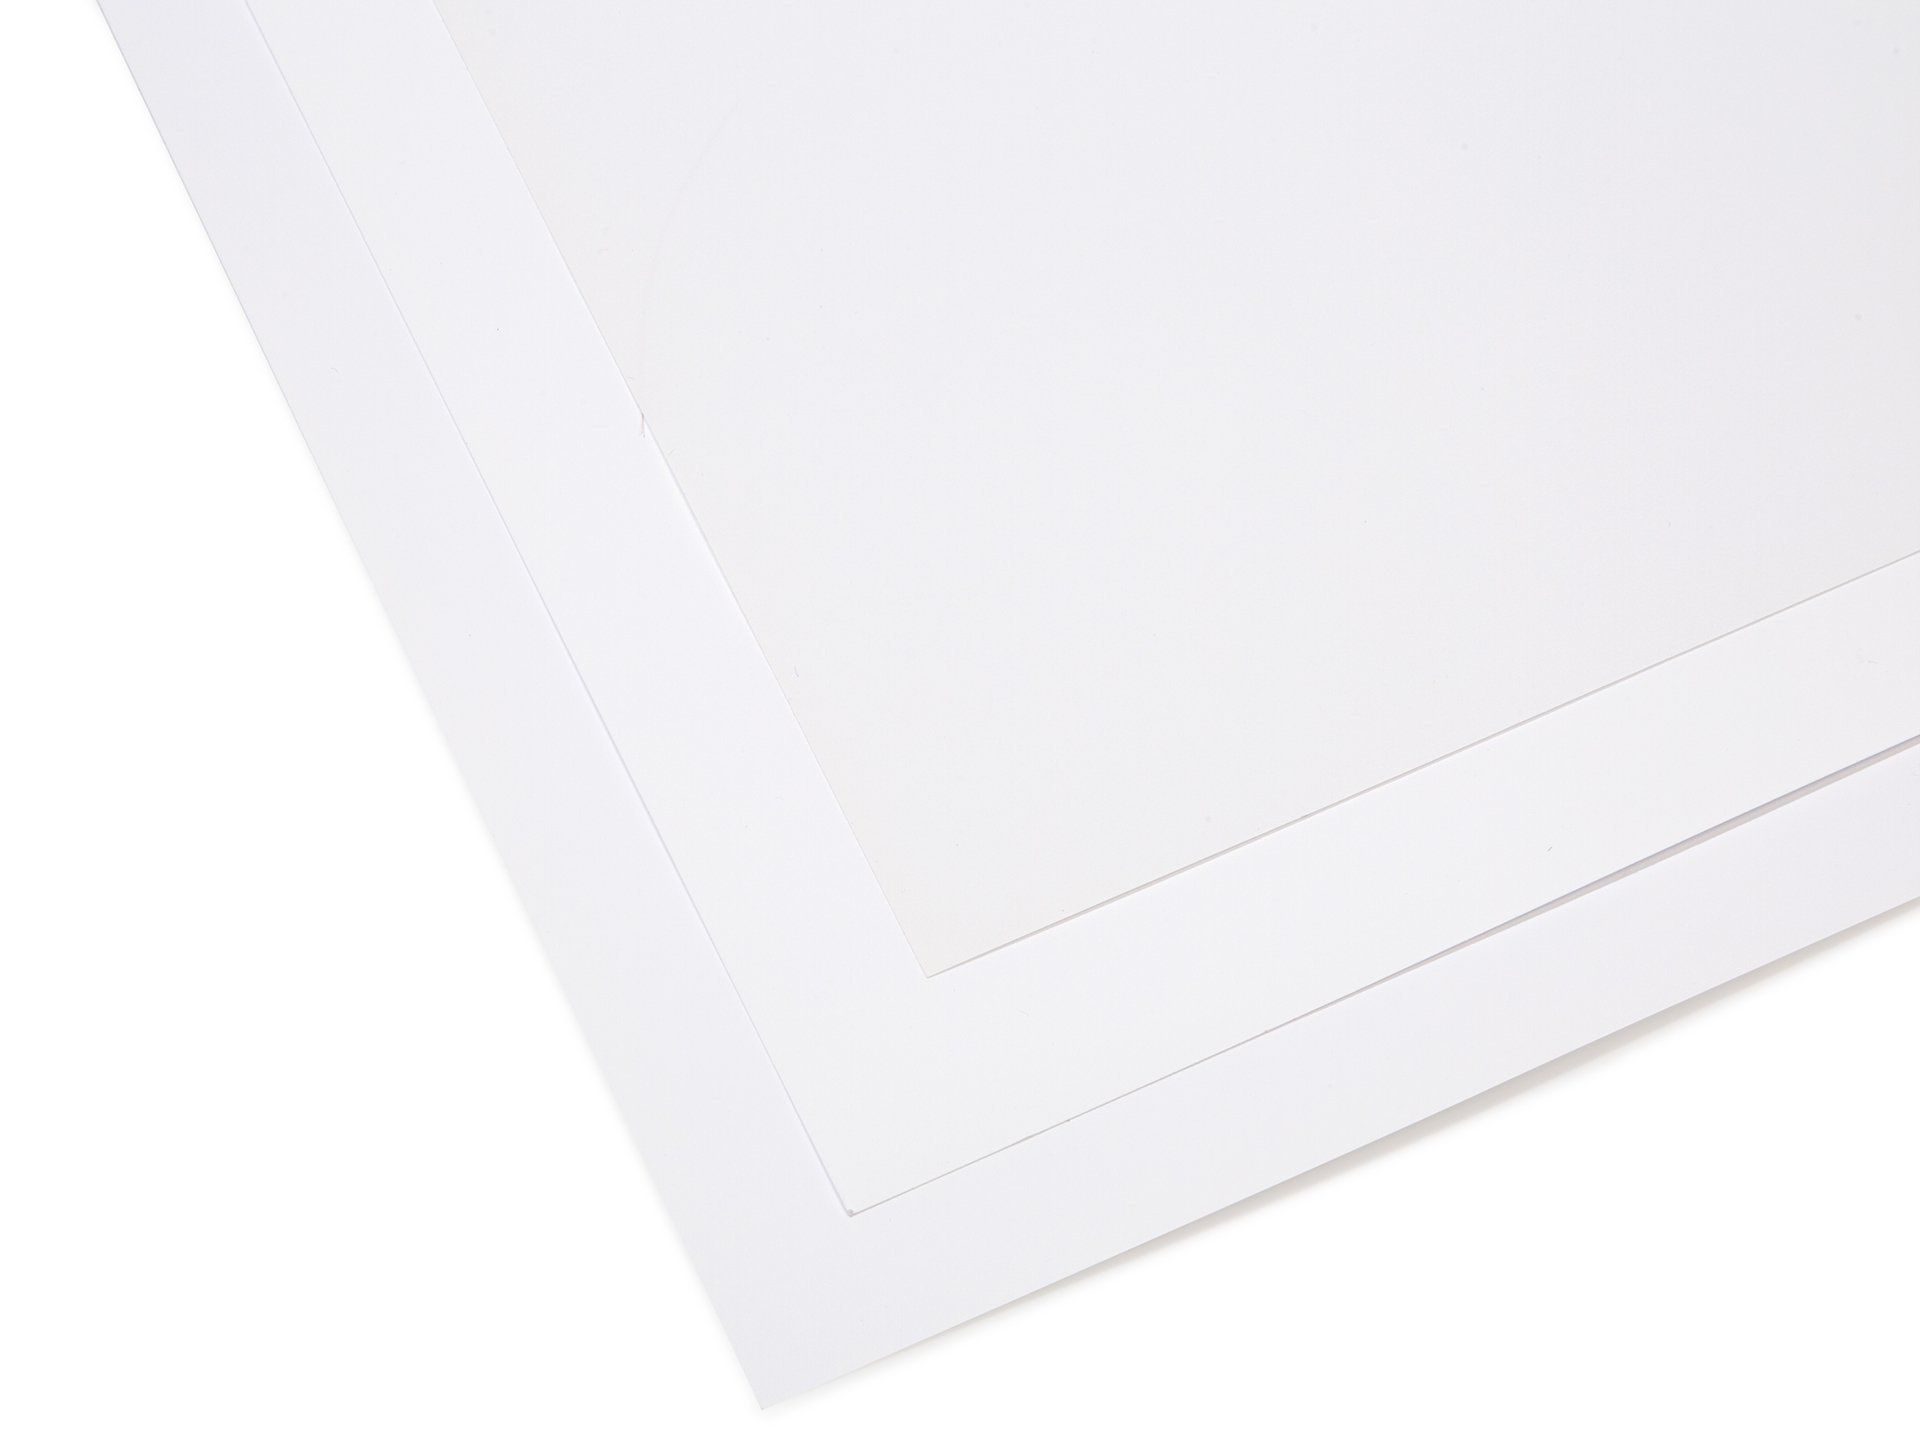 Netuno 10x cartón Liso Color Blanco DIN A3 297x420mm 246g Elfenbein Ultra White Papel Elegante Suave cartulina para Tarjetas invitaciónes certificados Diplomas embalajes encartes papelería impresoras 